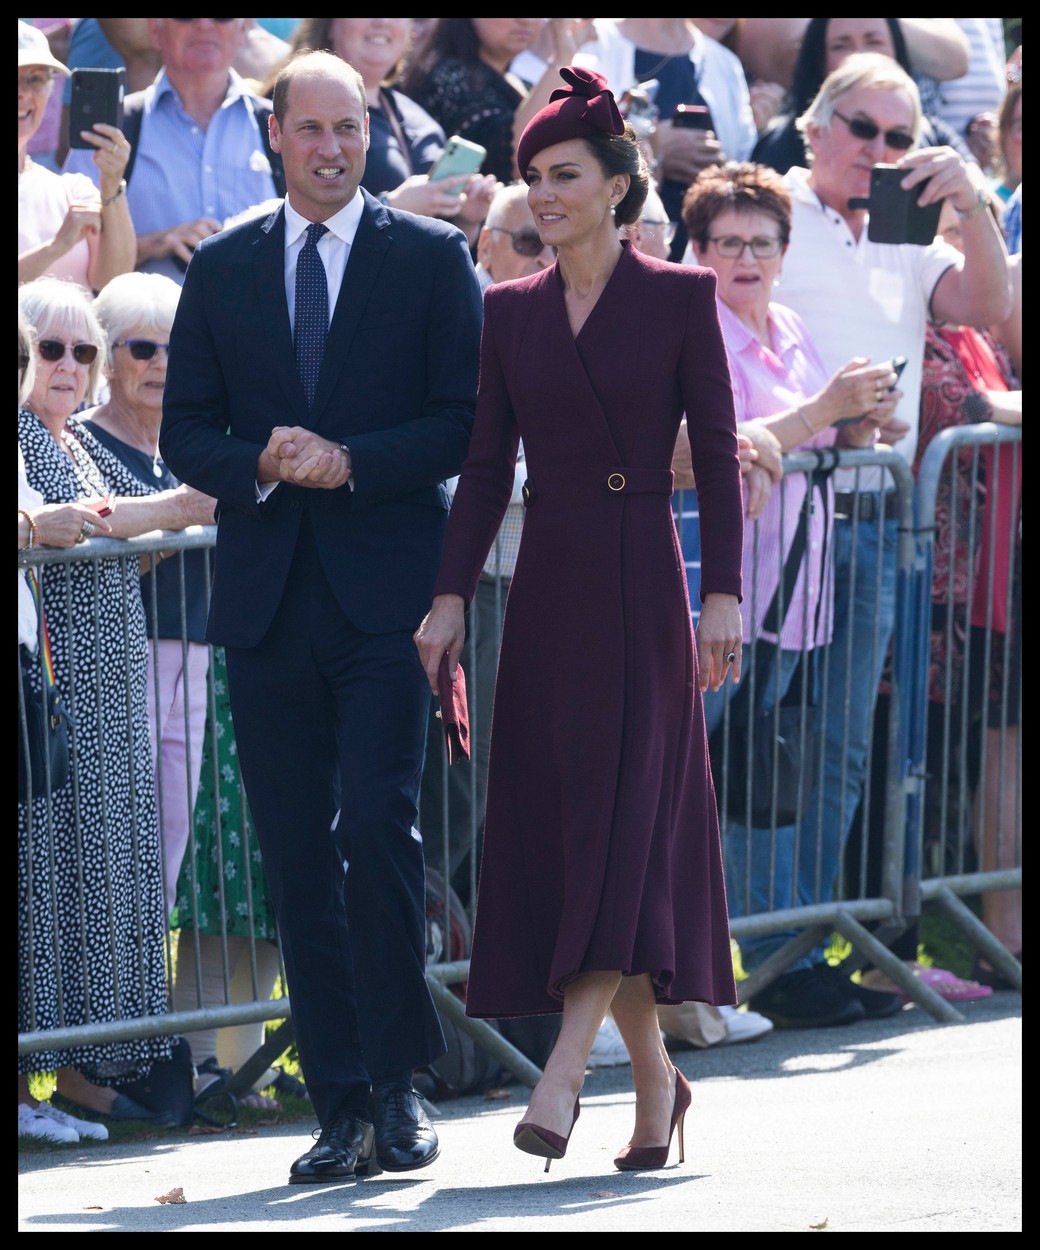 Kate Middleton și Prințul William, împreună, în ținute elegante, la un eveniment organizat în memoria Reginei Elisabeta